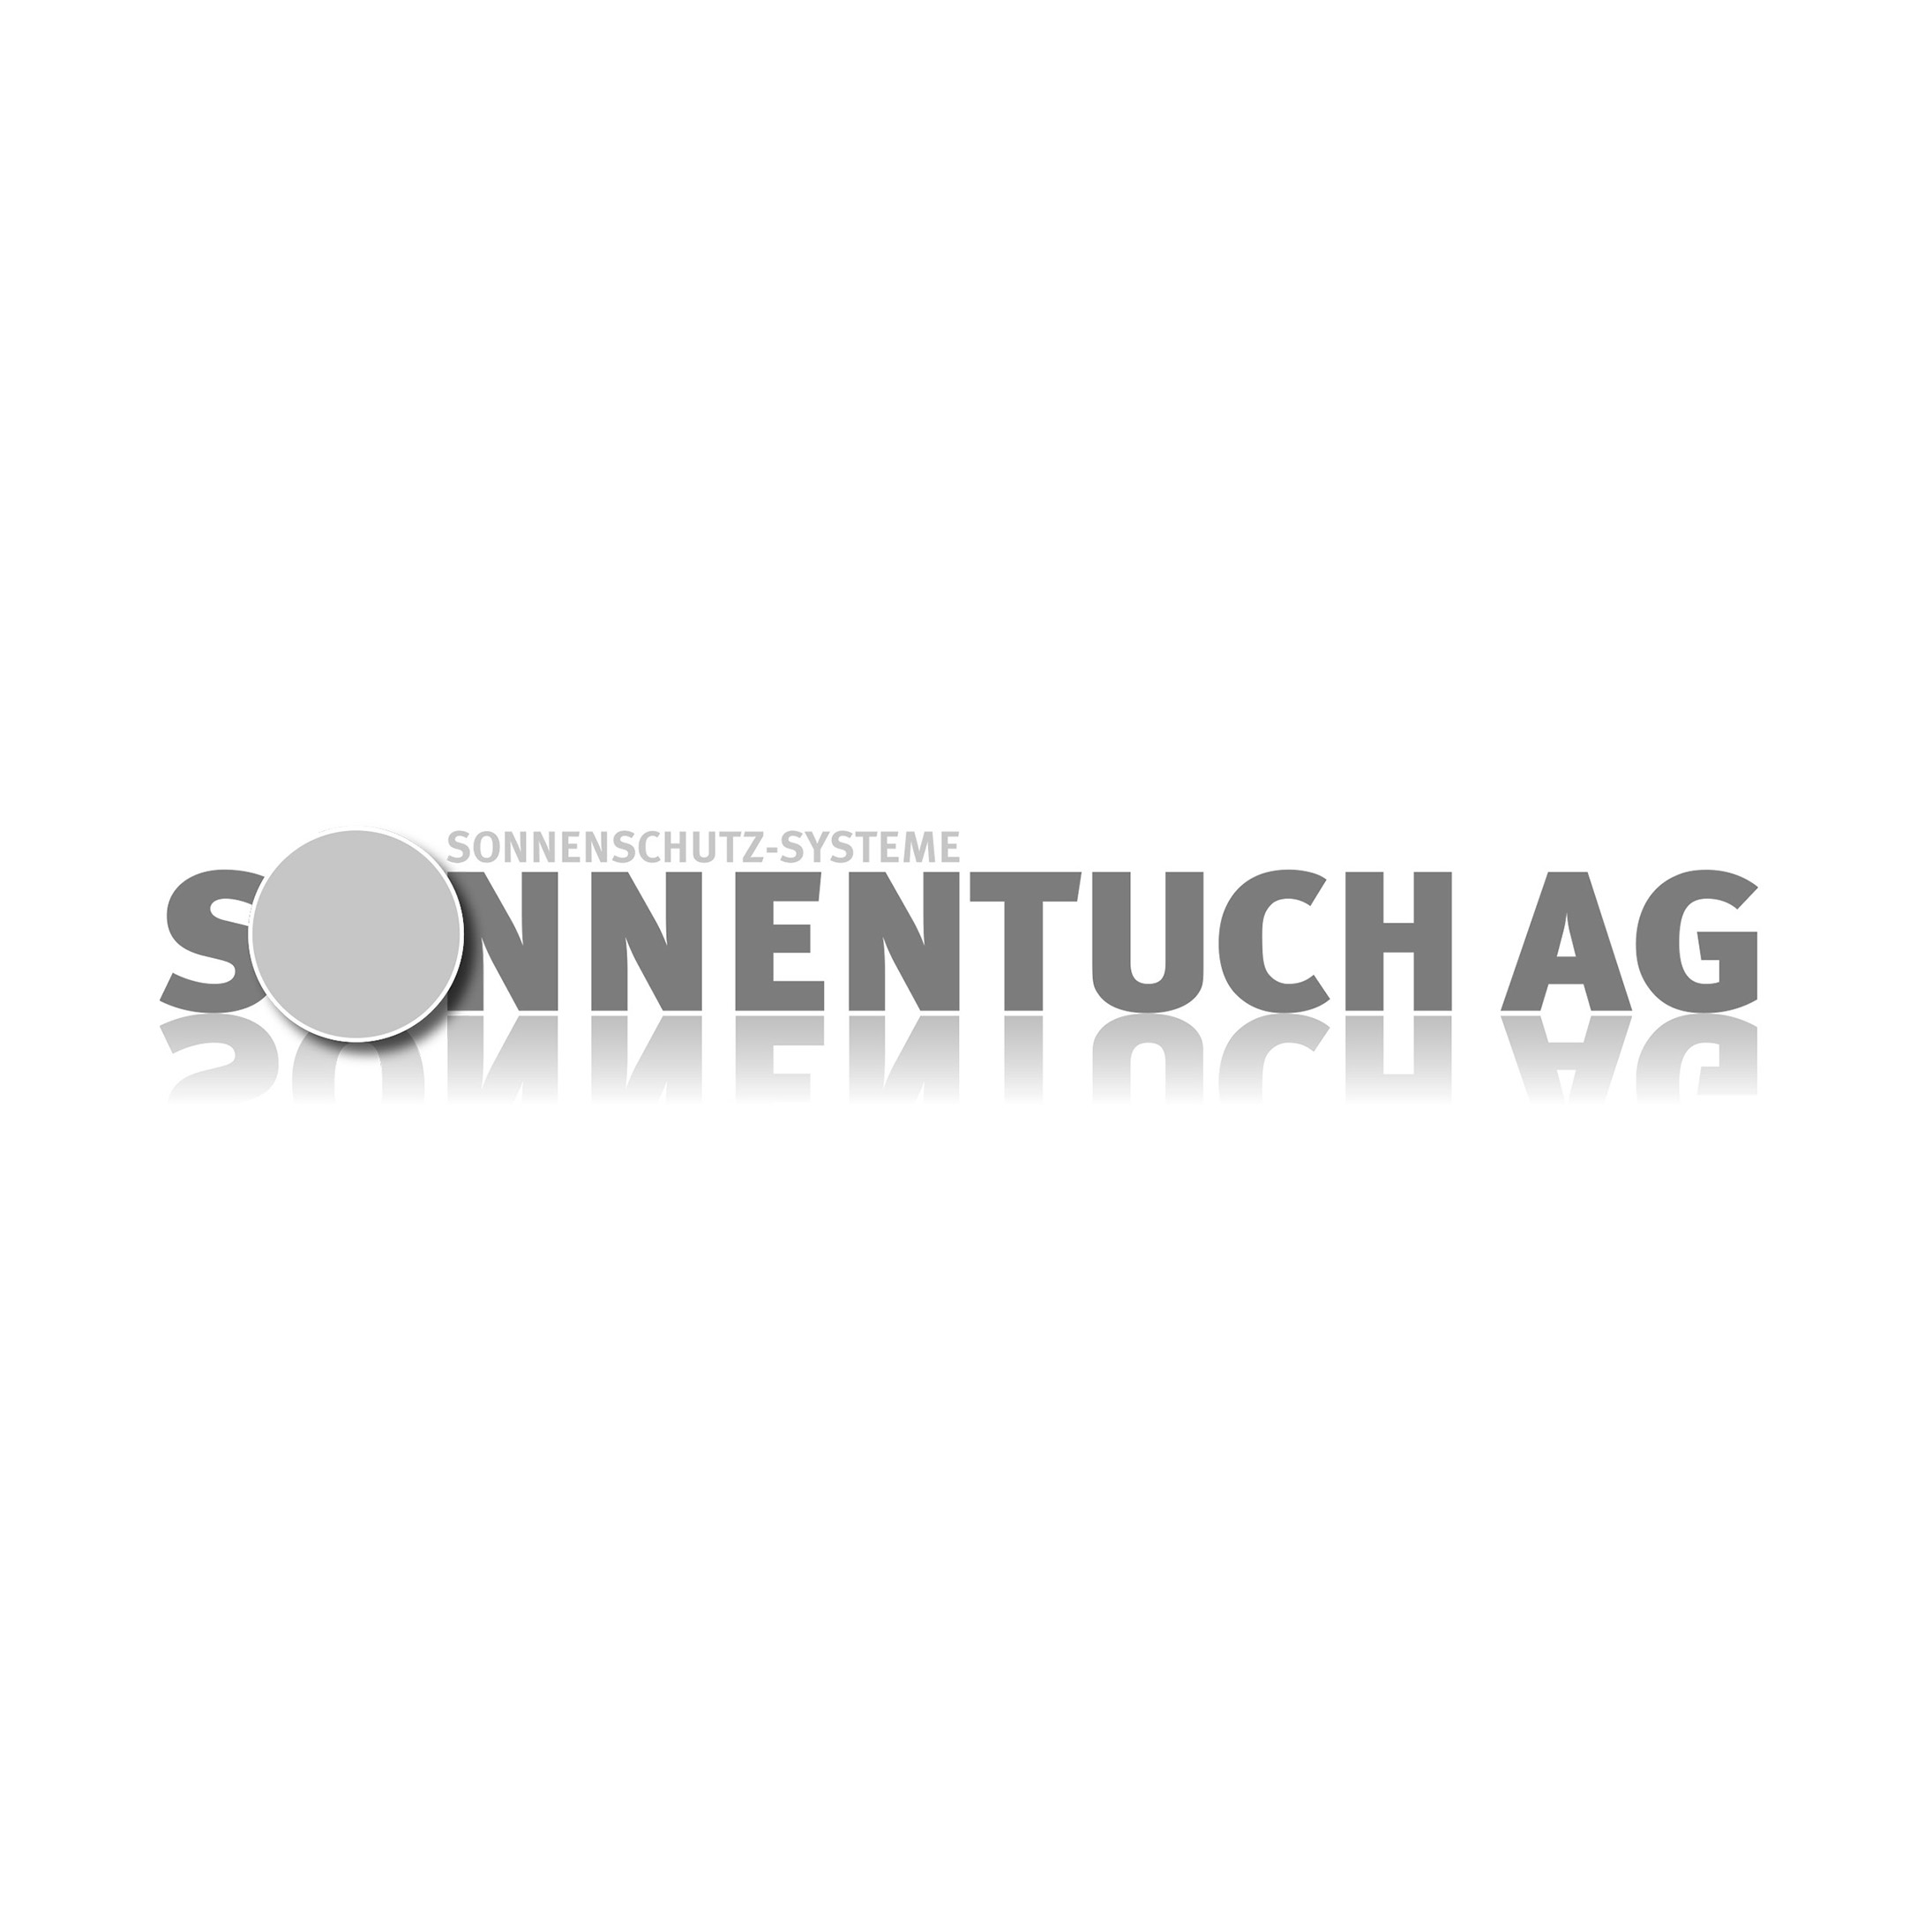 ASC_Logo_Kunde_Sonnentuch_